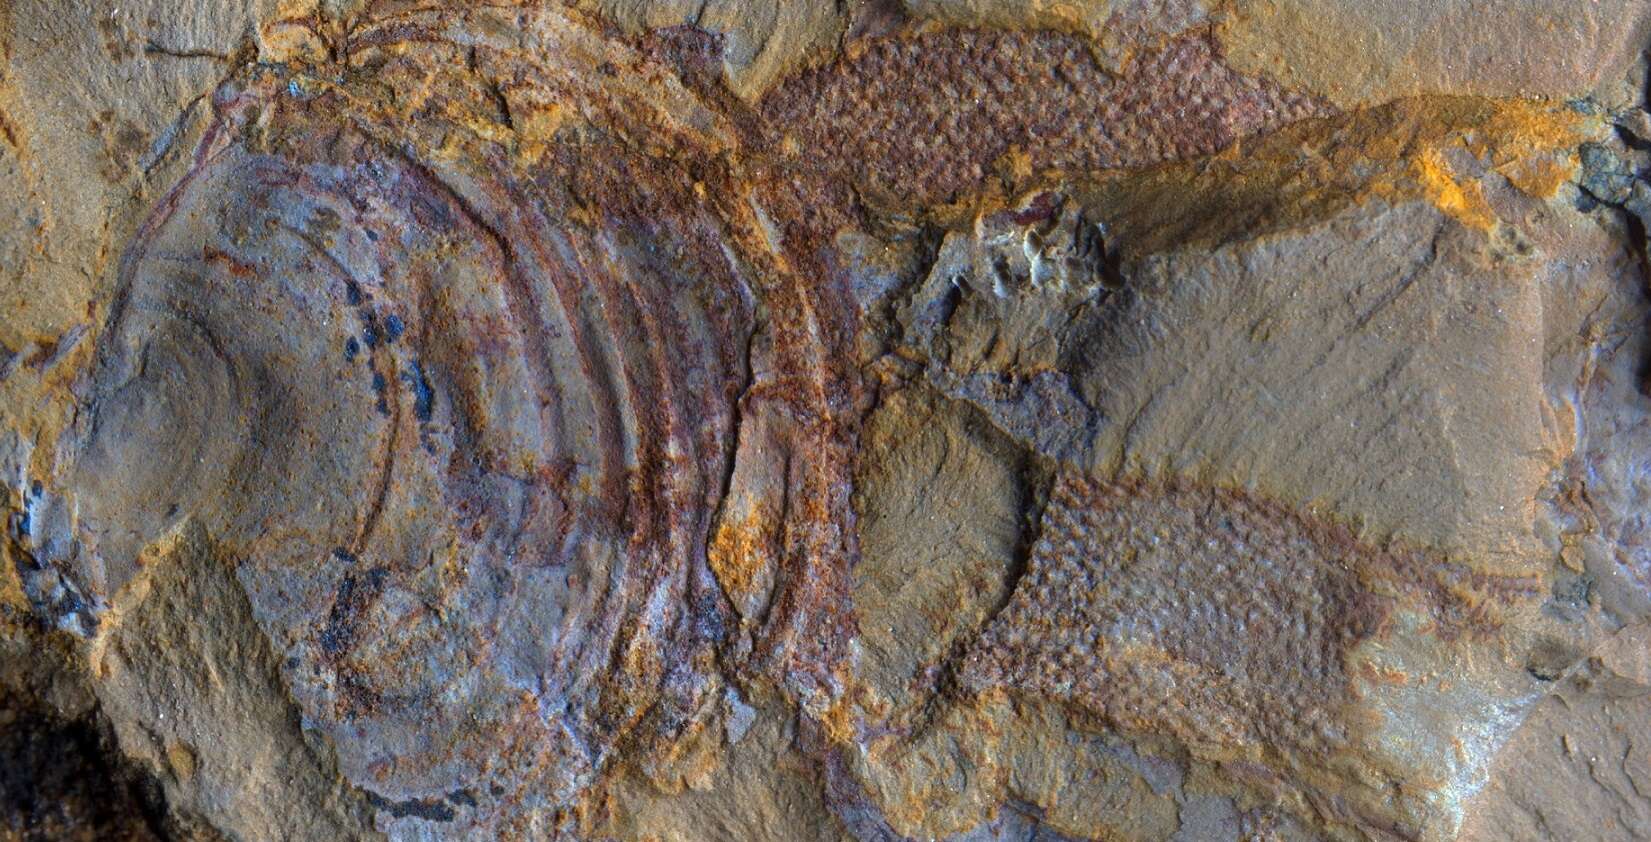 Ce fossile vieux de 520 millions d'années ne serait pas celui d'un animal